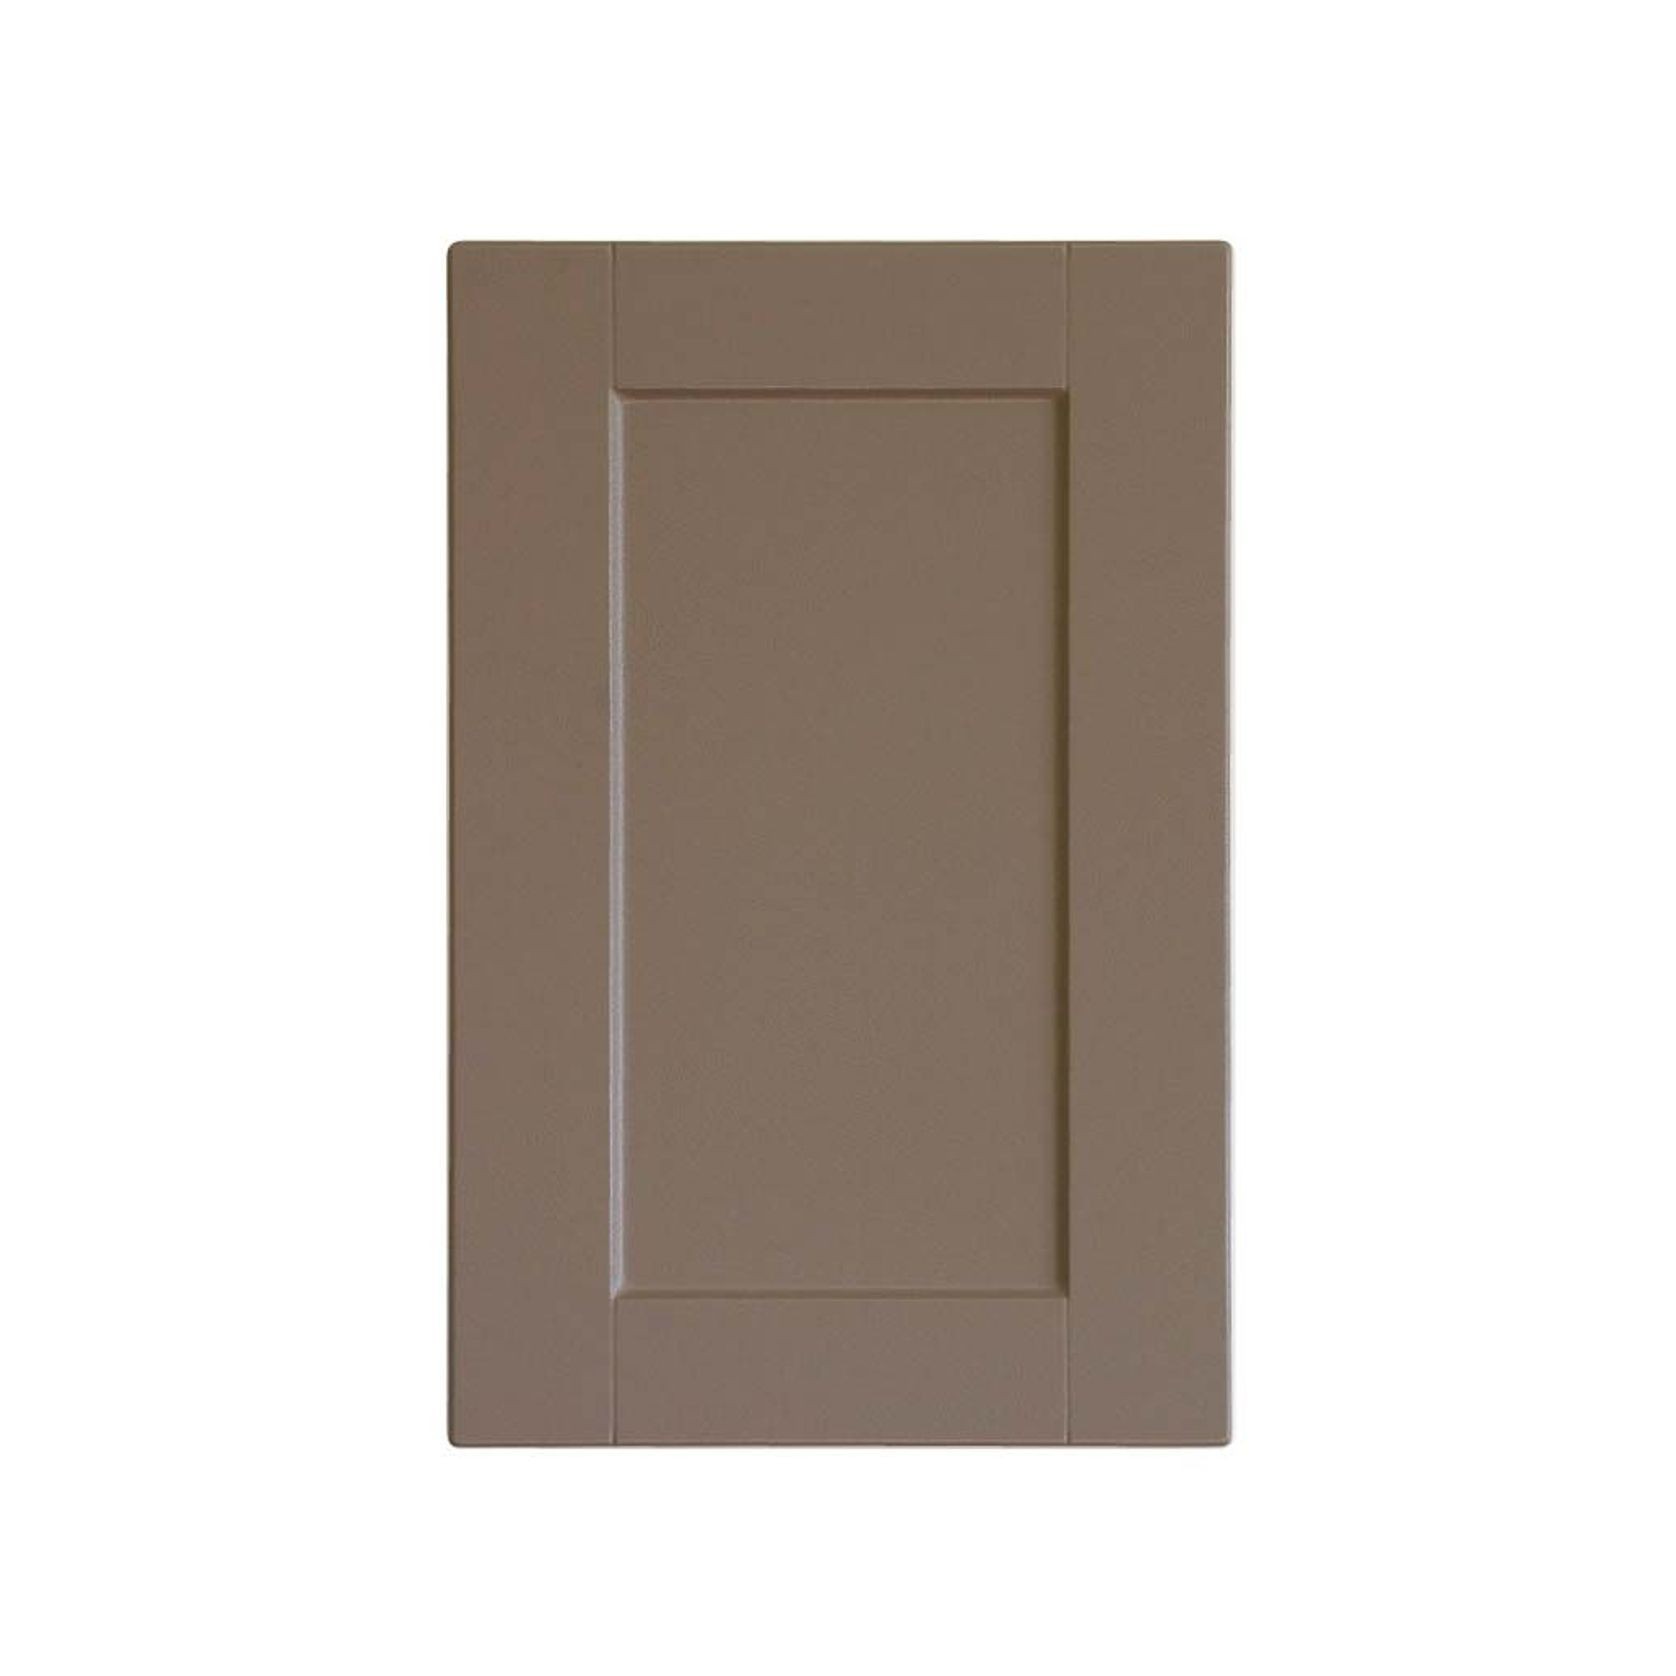 Durostyle Platinum Series - Bainbridge Kitchen Cabinet Doors gallery detail image